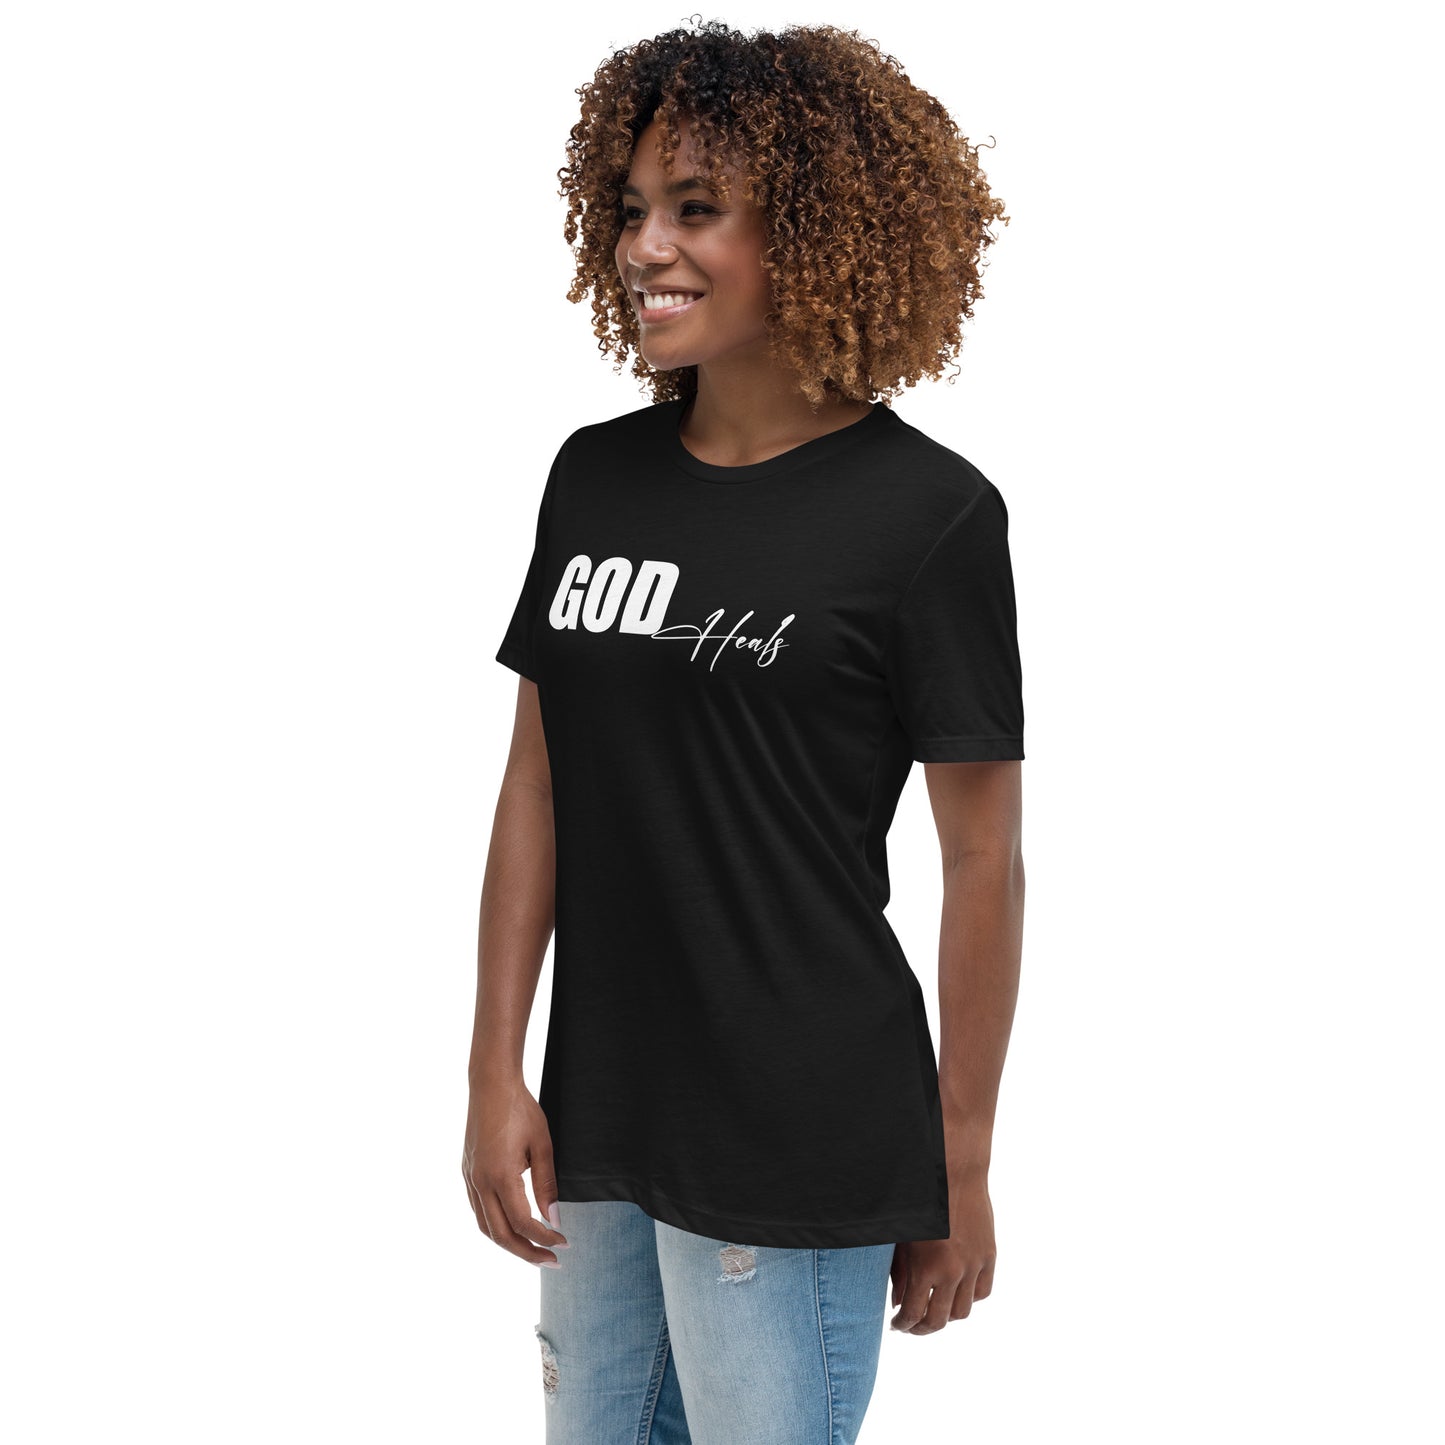 "God Heals" Women's T-Shirt